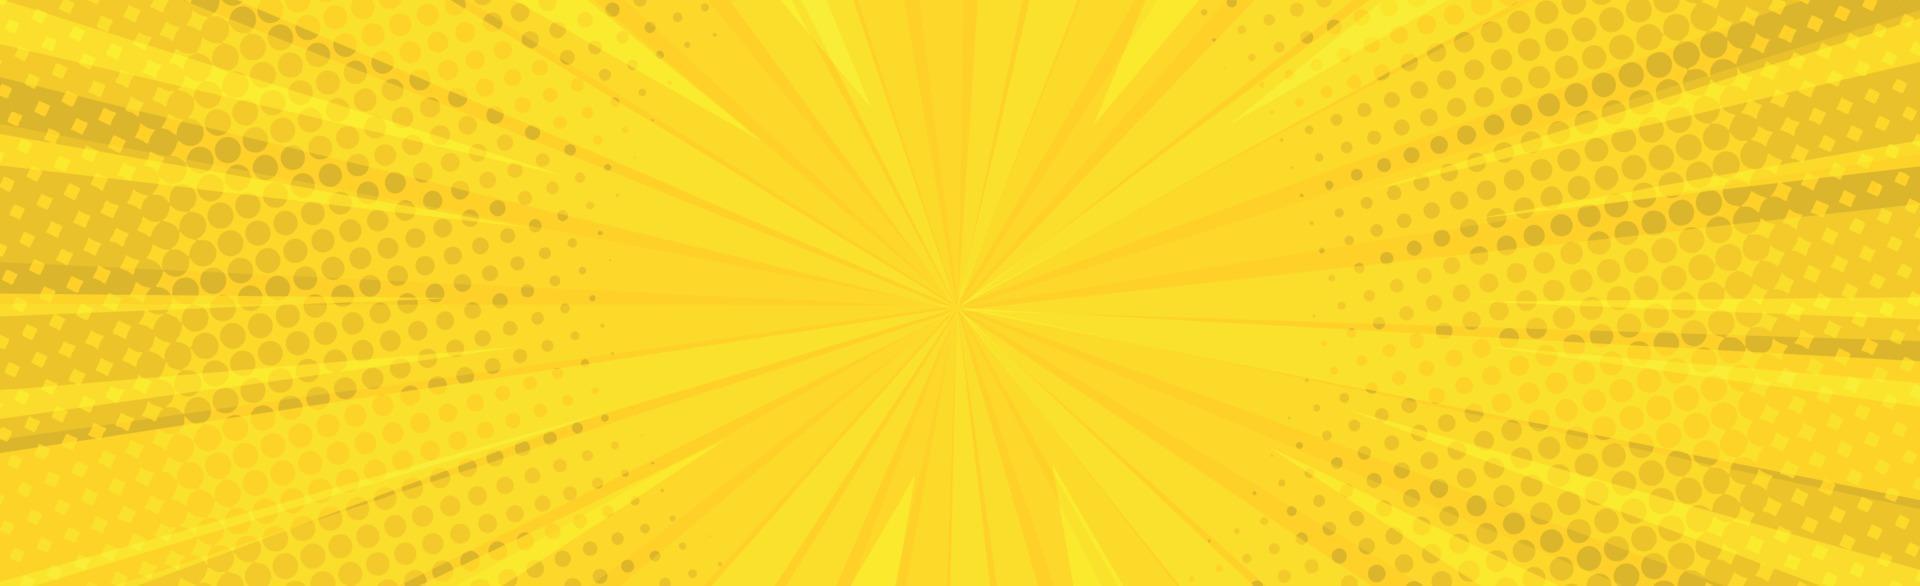 orangefarbener Comic-Zoom mit Linien und Leuchtvektor vektor